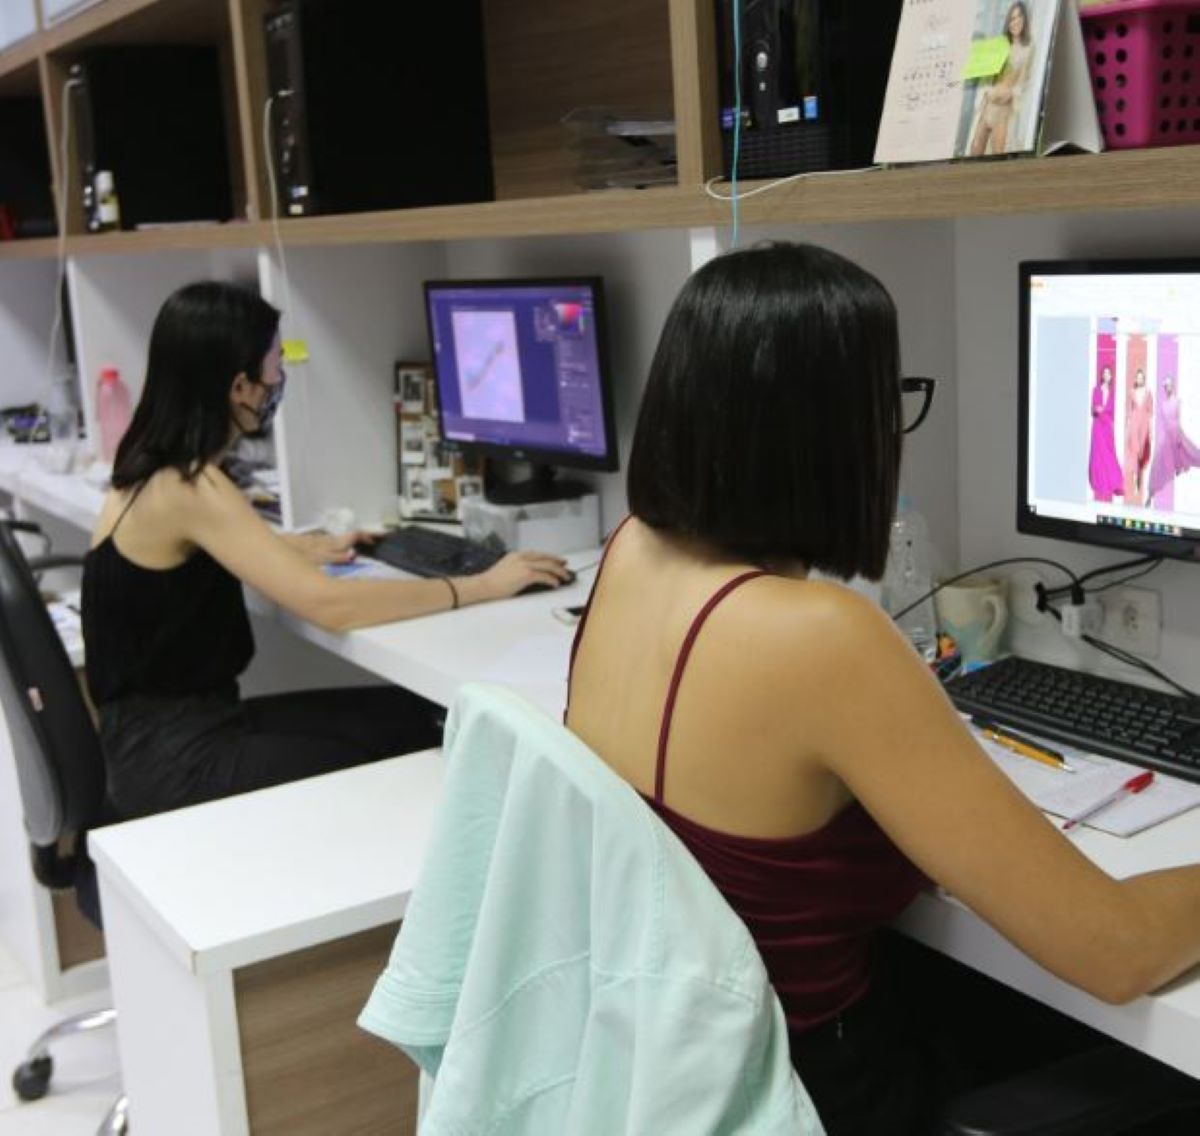  mulheres trabalhando no computador 